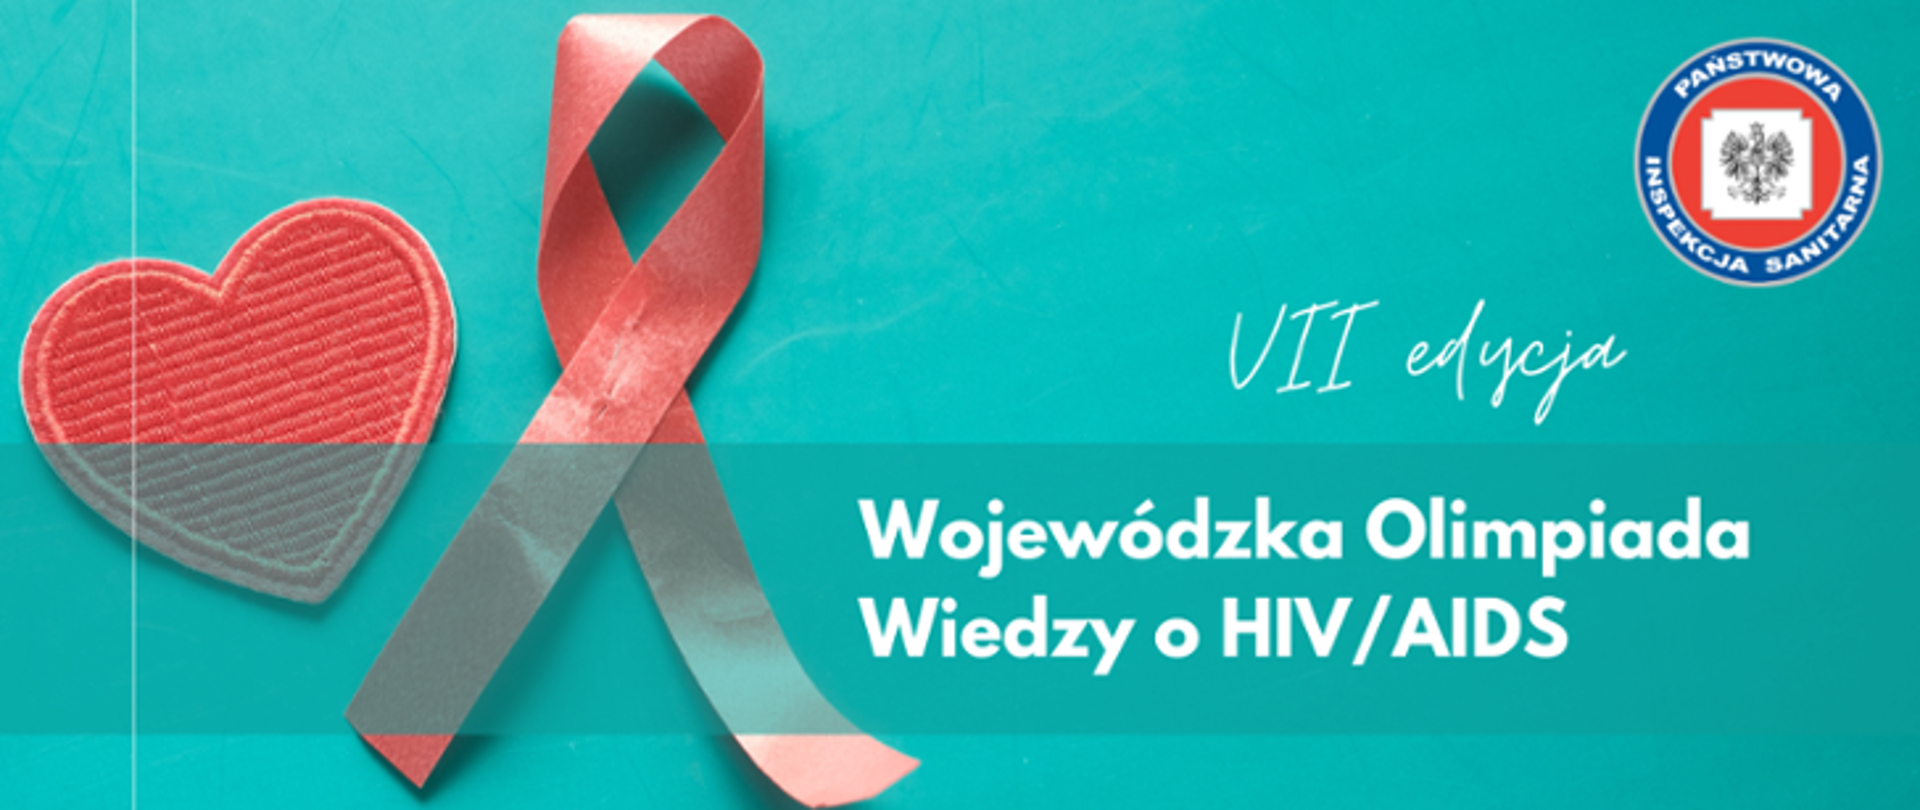 Wojewódzka Olimpiada Wiedzy o HIV/AIDS – VII edycja